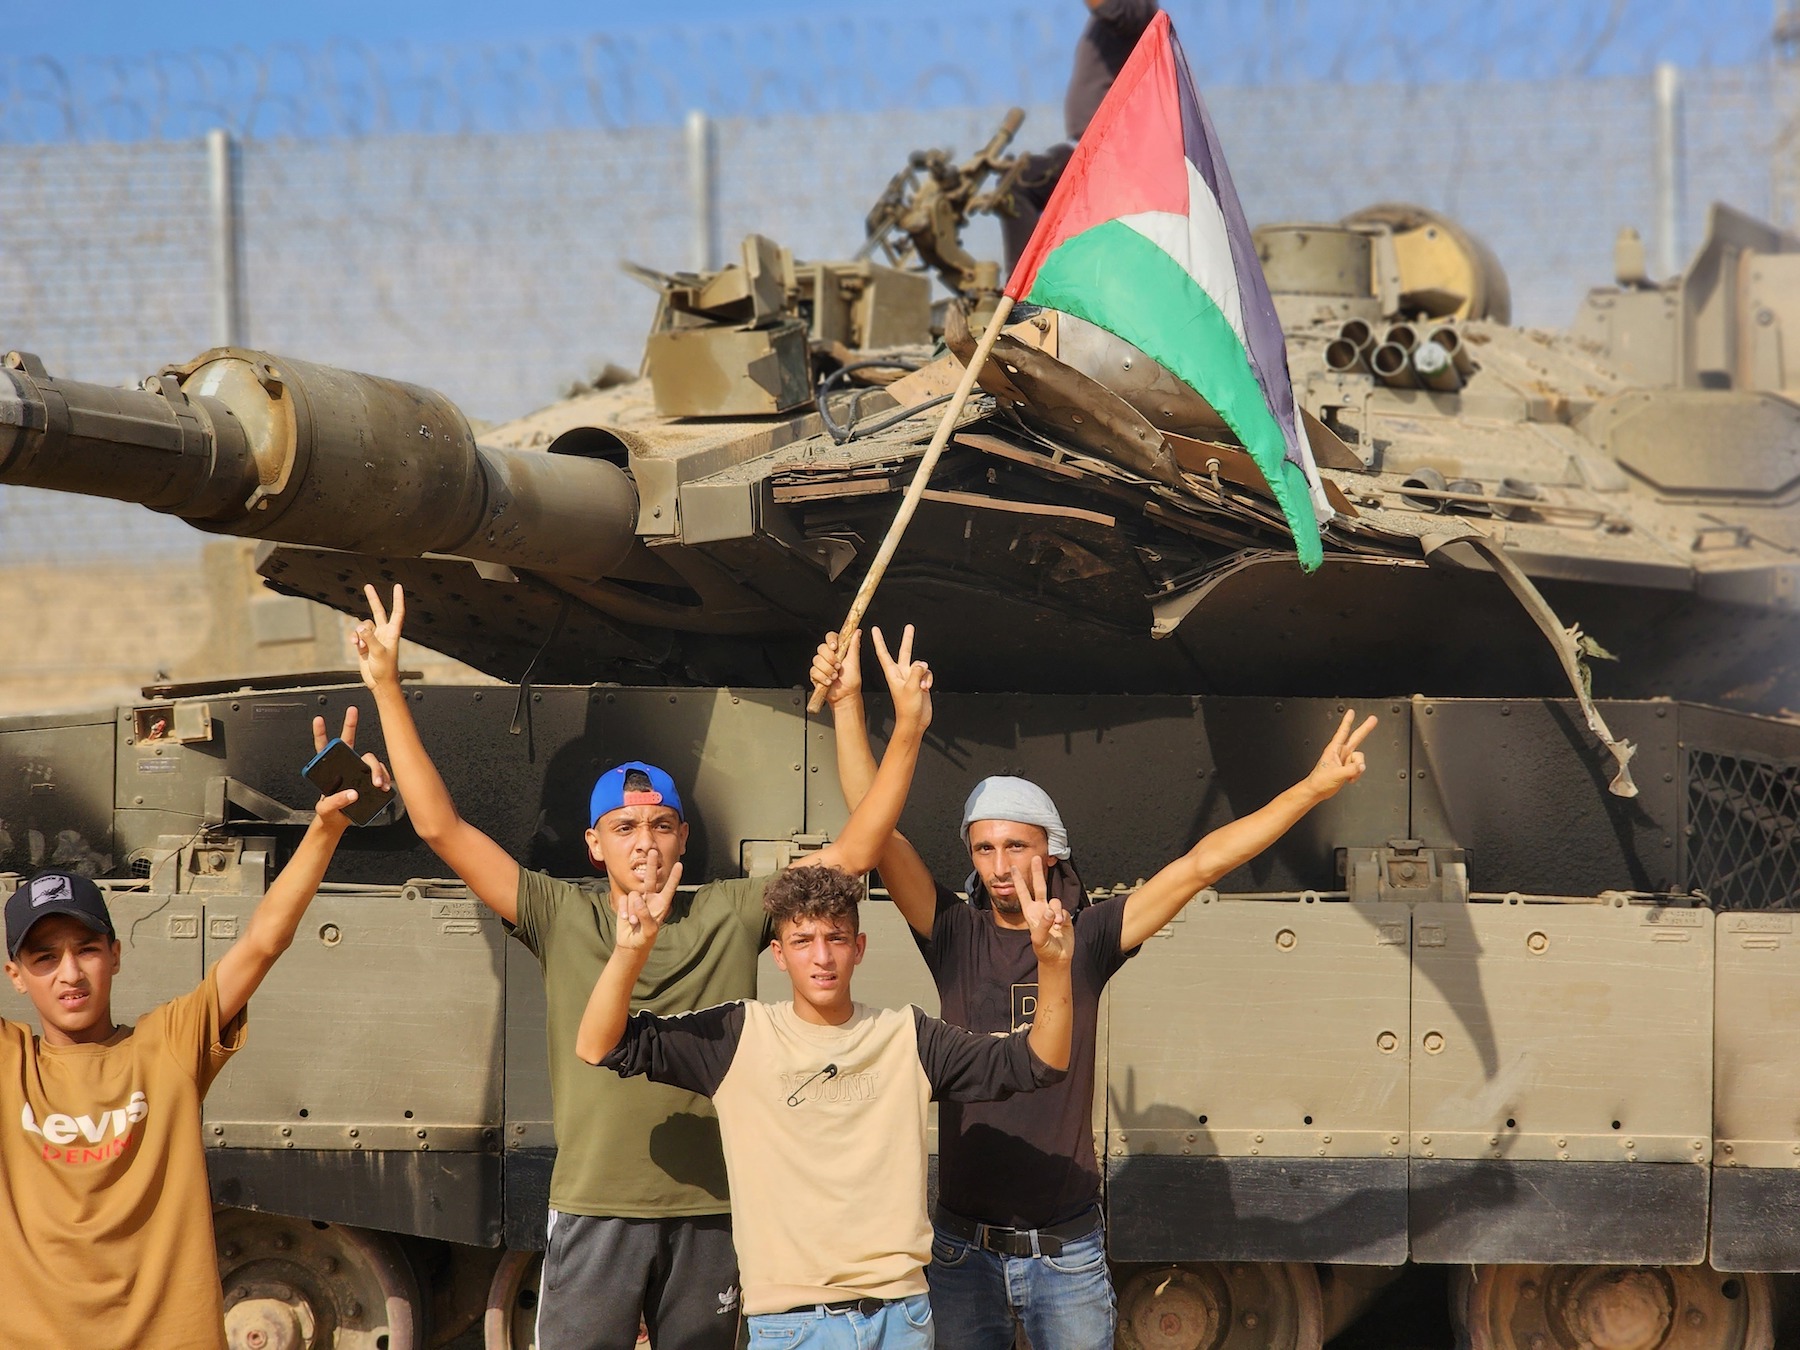 Hamas Izz ad Din al Qassam Brigades